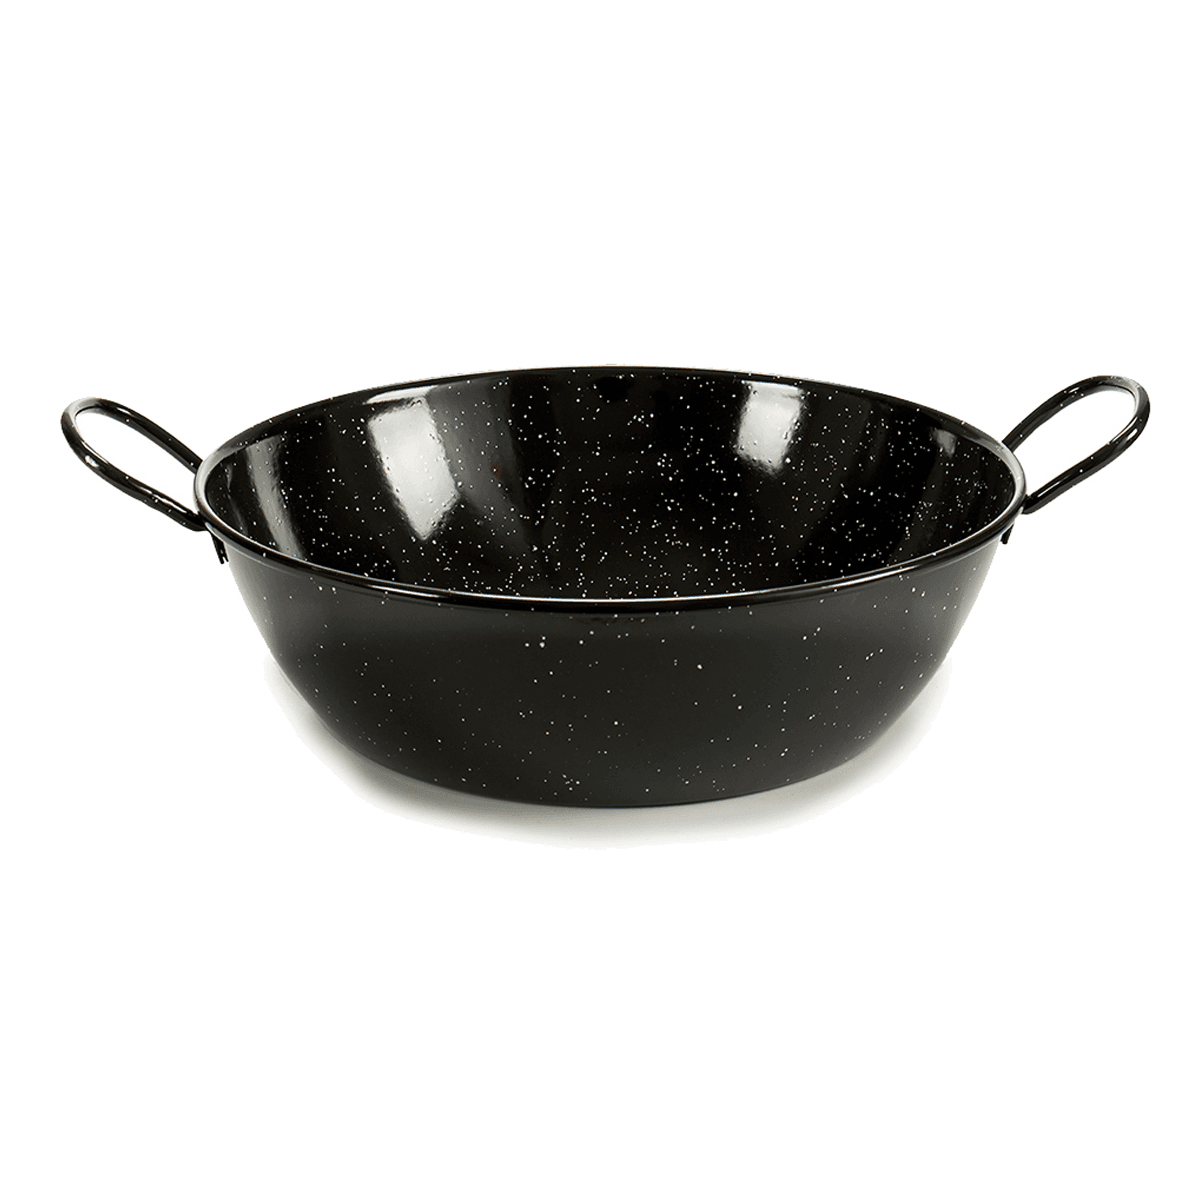 مقلاه عميقة للقلي قياس 45 سم لون أسود لا ديسا La Dehesa Black Deep Enameled Steel Frying Pan